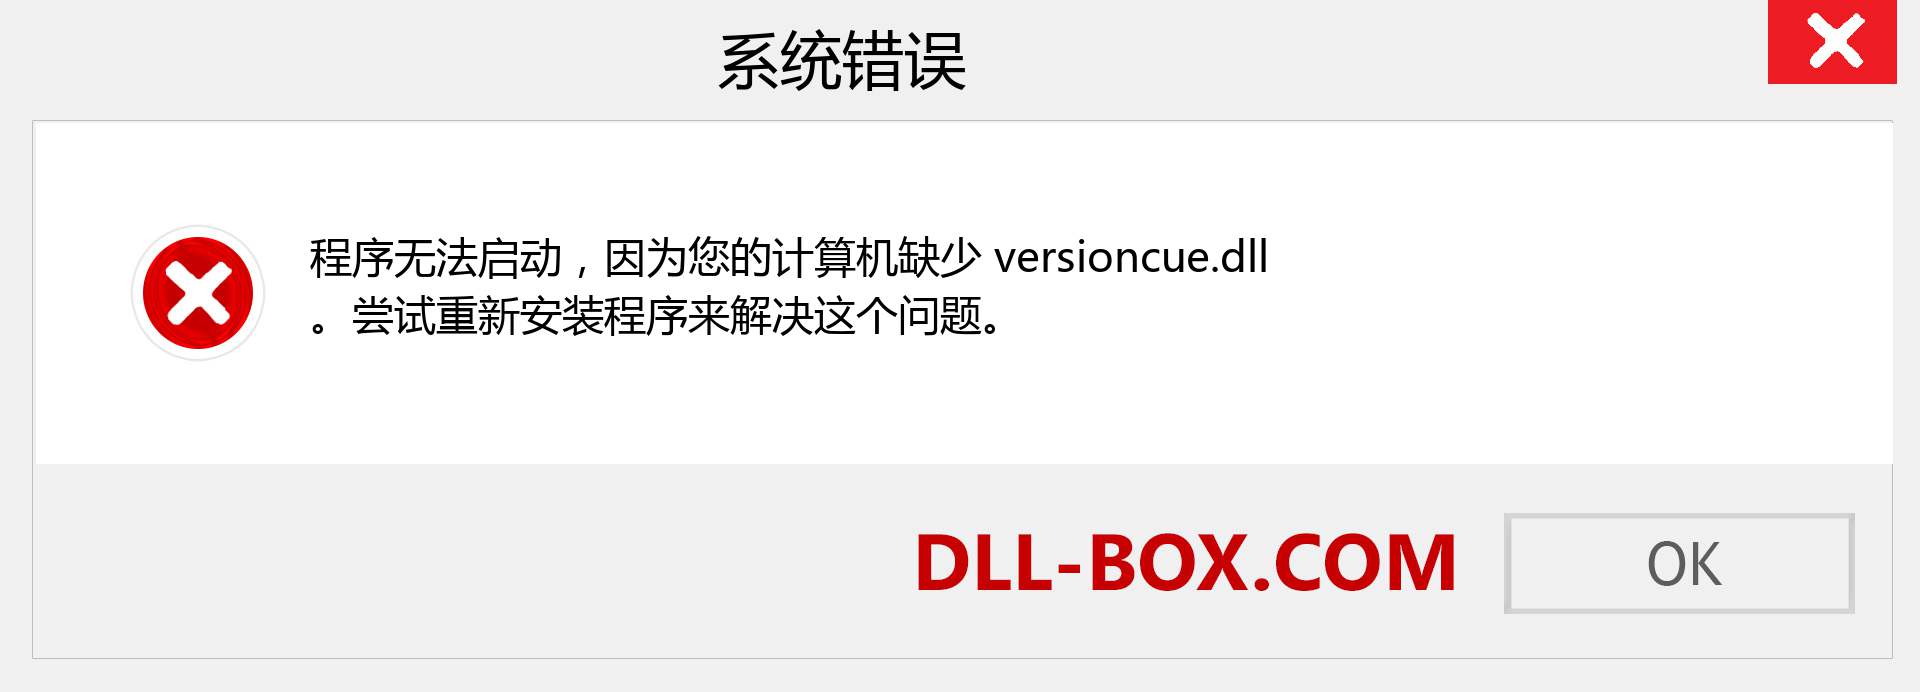 versioncue.dll 文件丢失？。 适用于 Windows 7、8、10 的下载 - 修复 Windows、照片、图像上的 versioncue dll 丢失错误